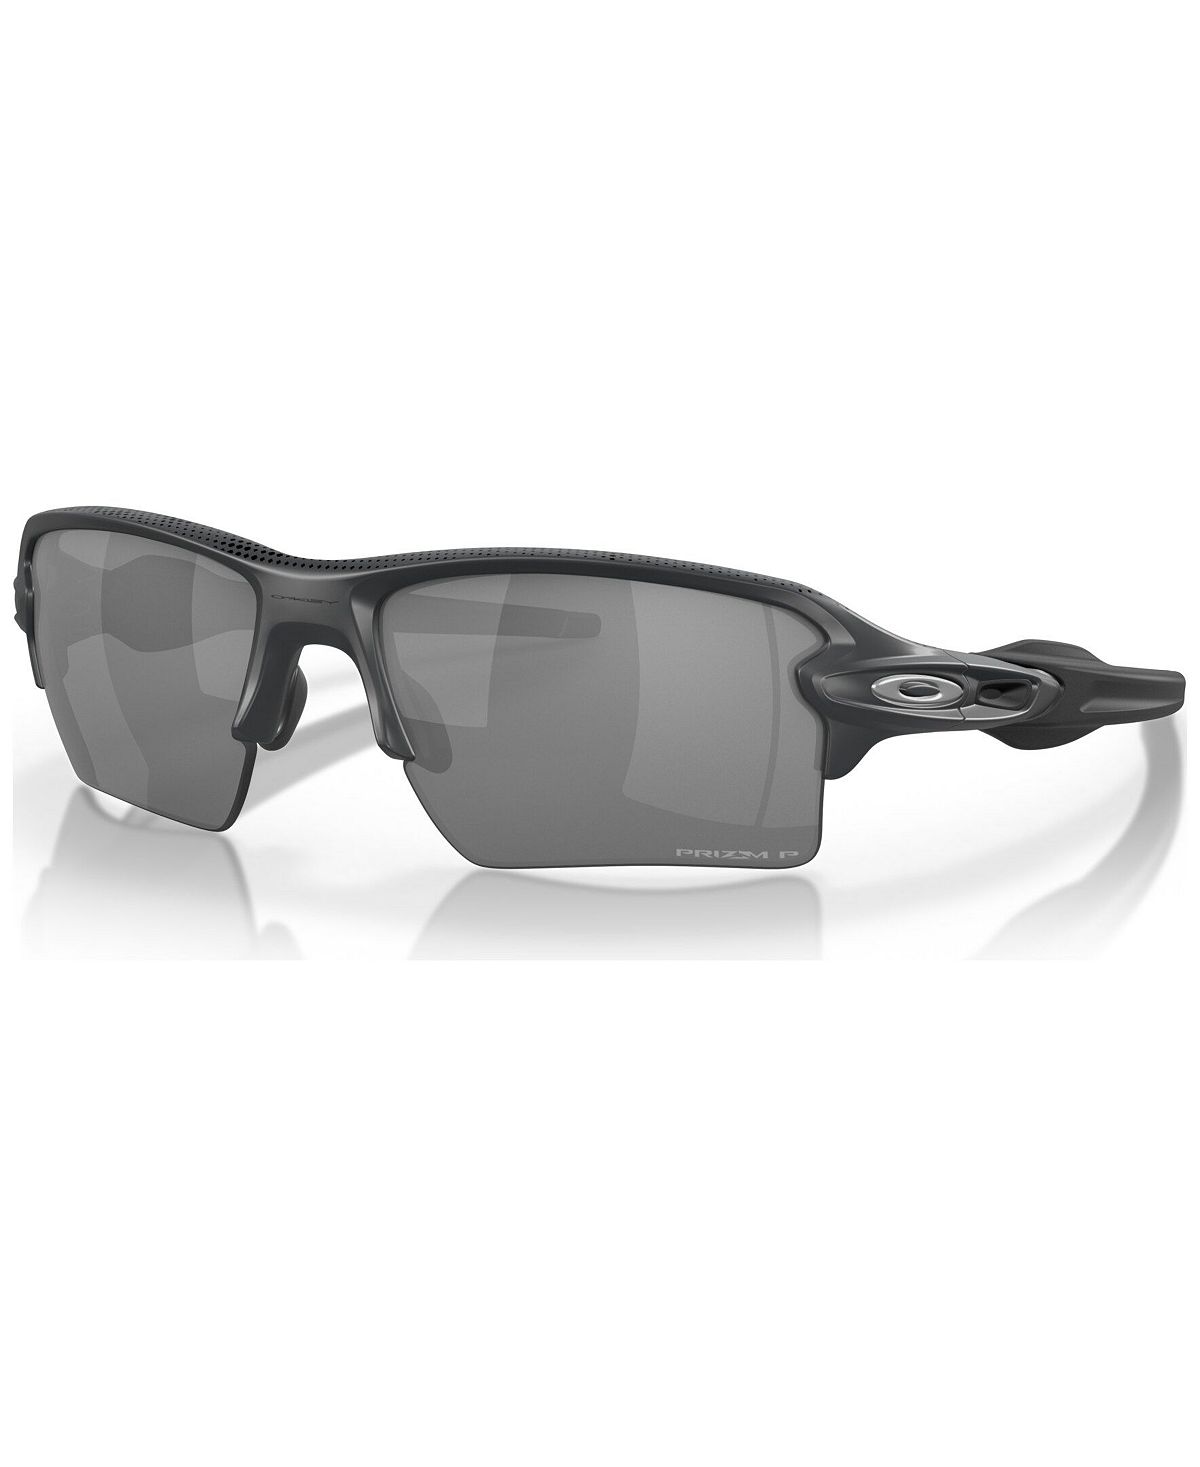 Мужские поляризованные солнцезащитные очки, OO9188 Flak 2.0 XL MVP, коллекция высокого разрешения 59 Oakley